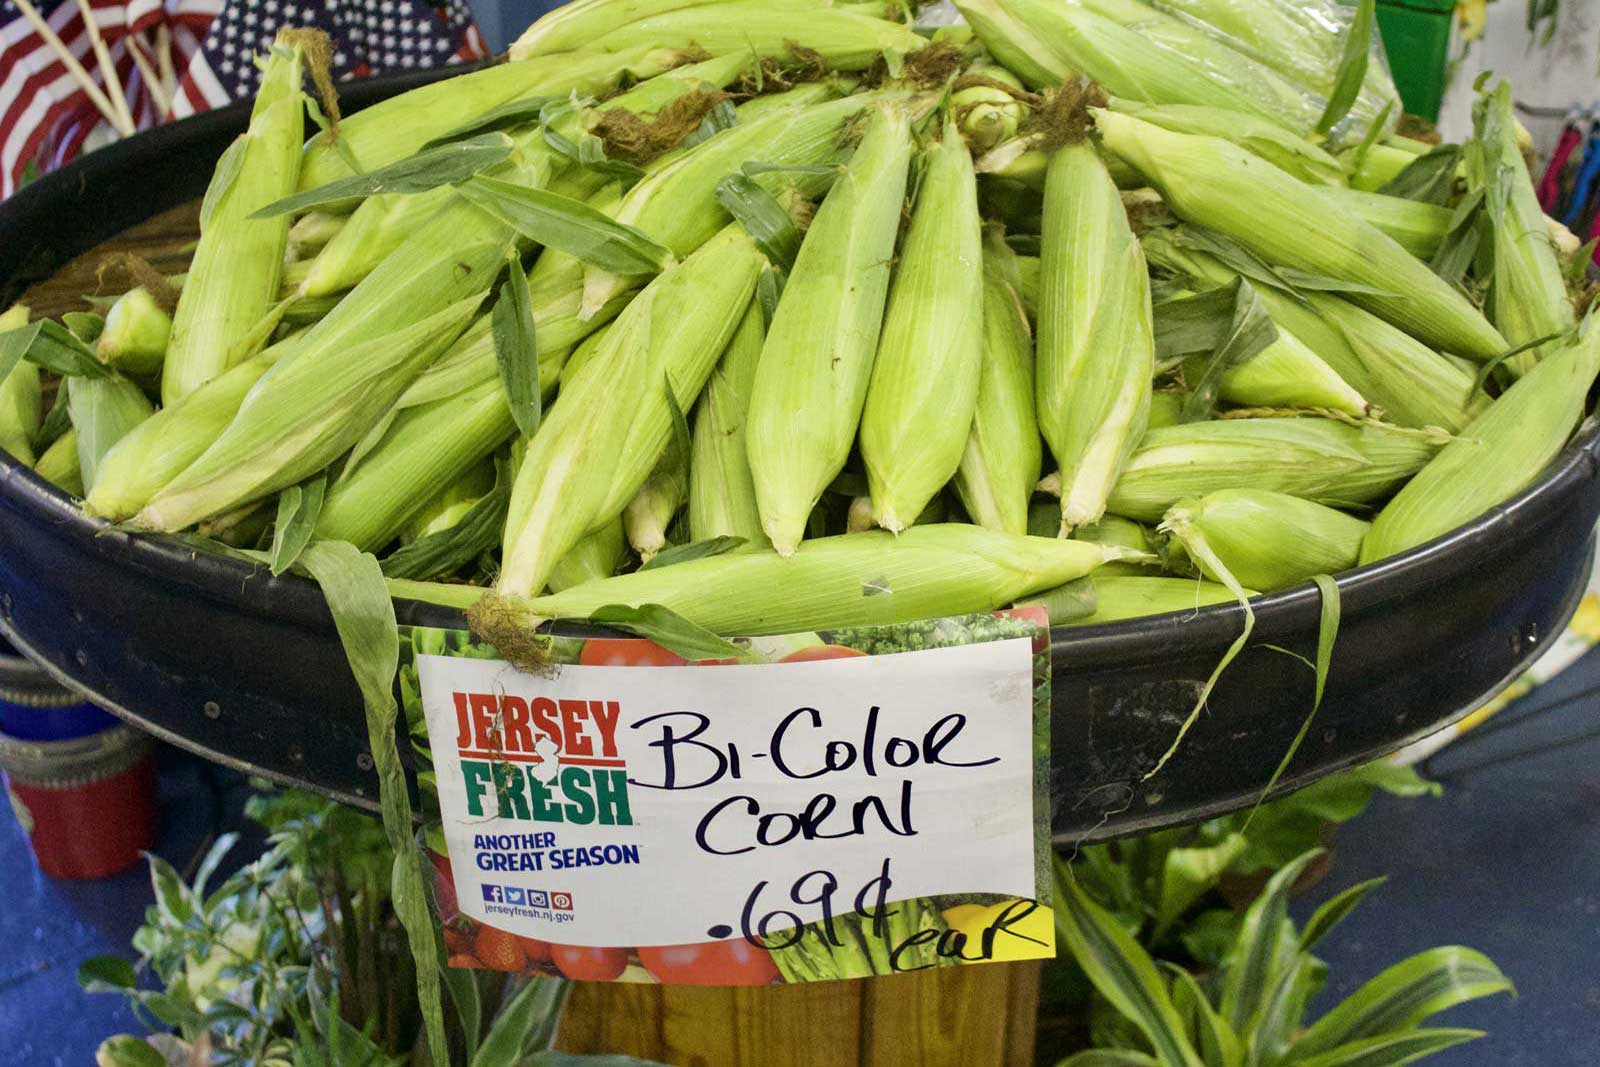 BiColor Corn at the Farmers Market